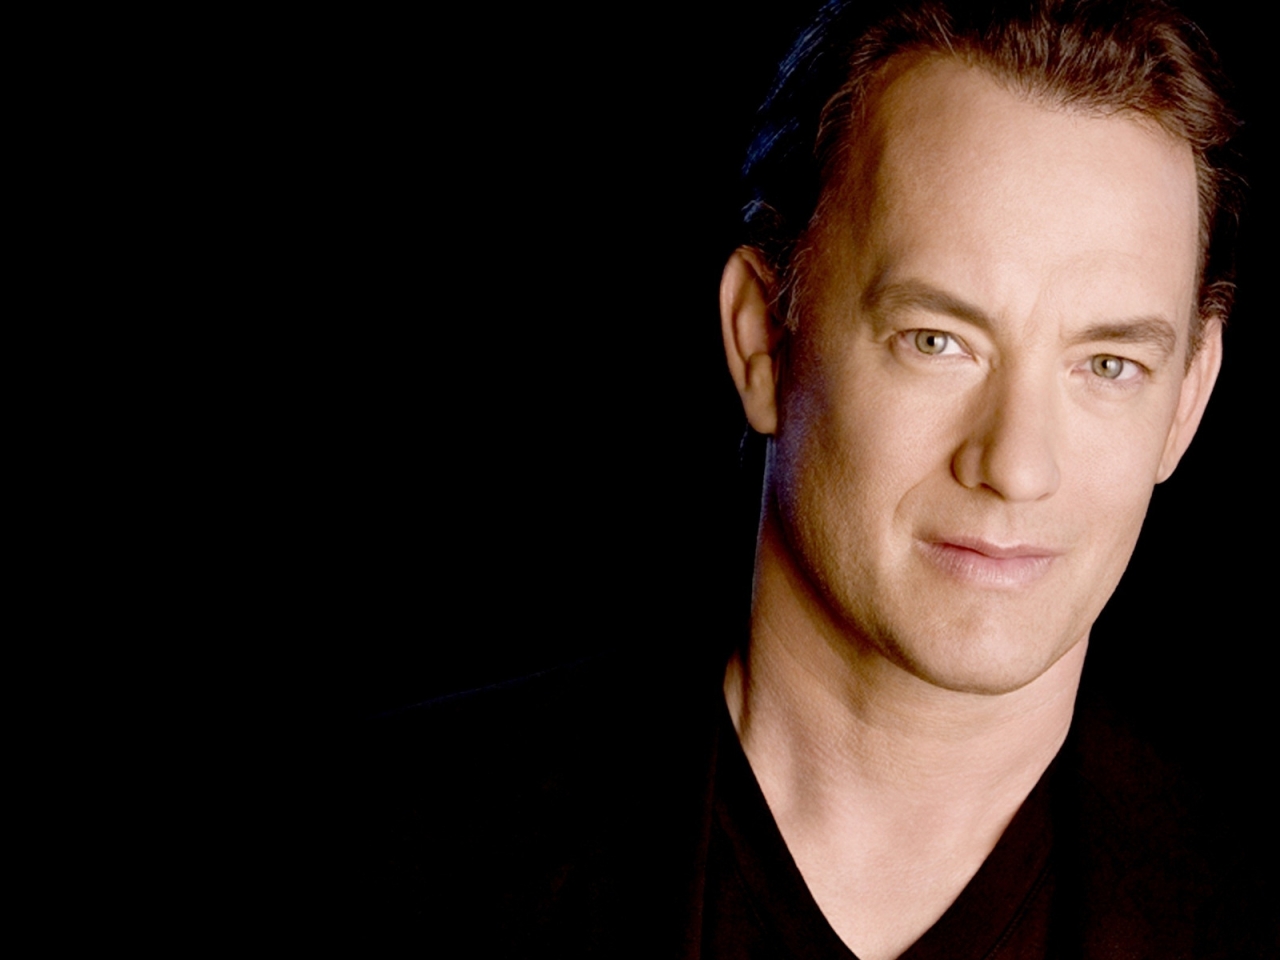 Tom Hanks for 1280 x 960 resolution